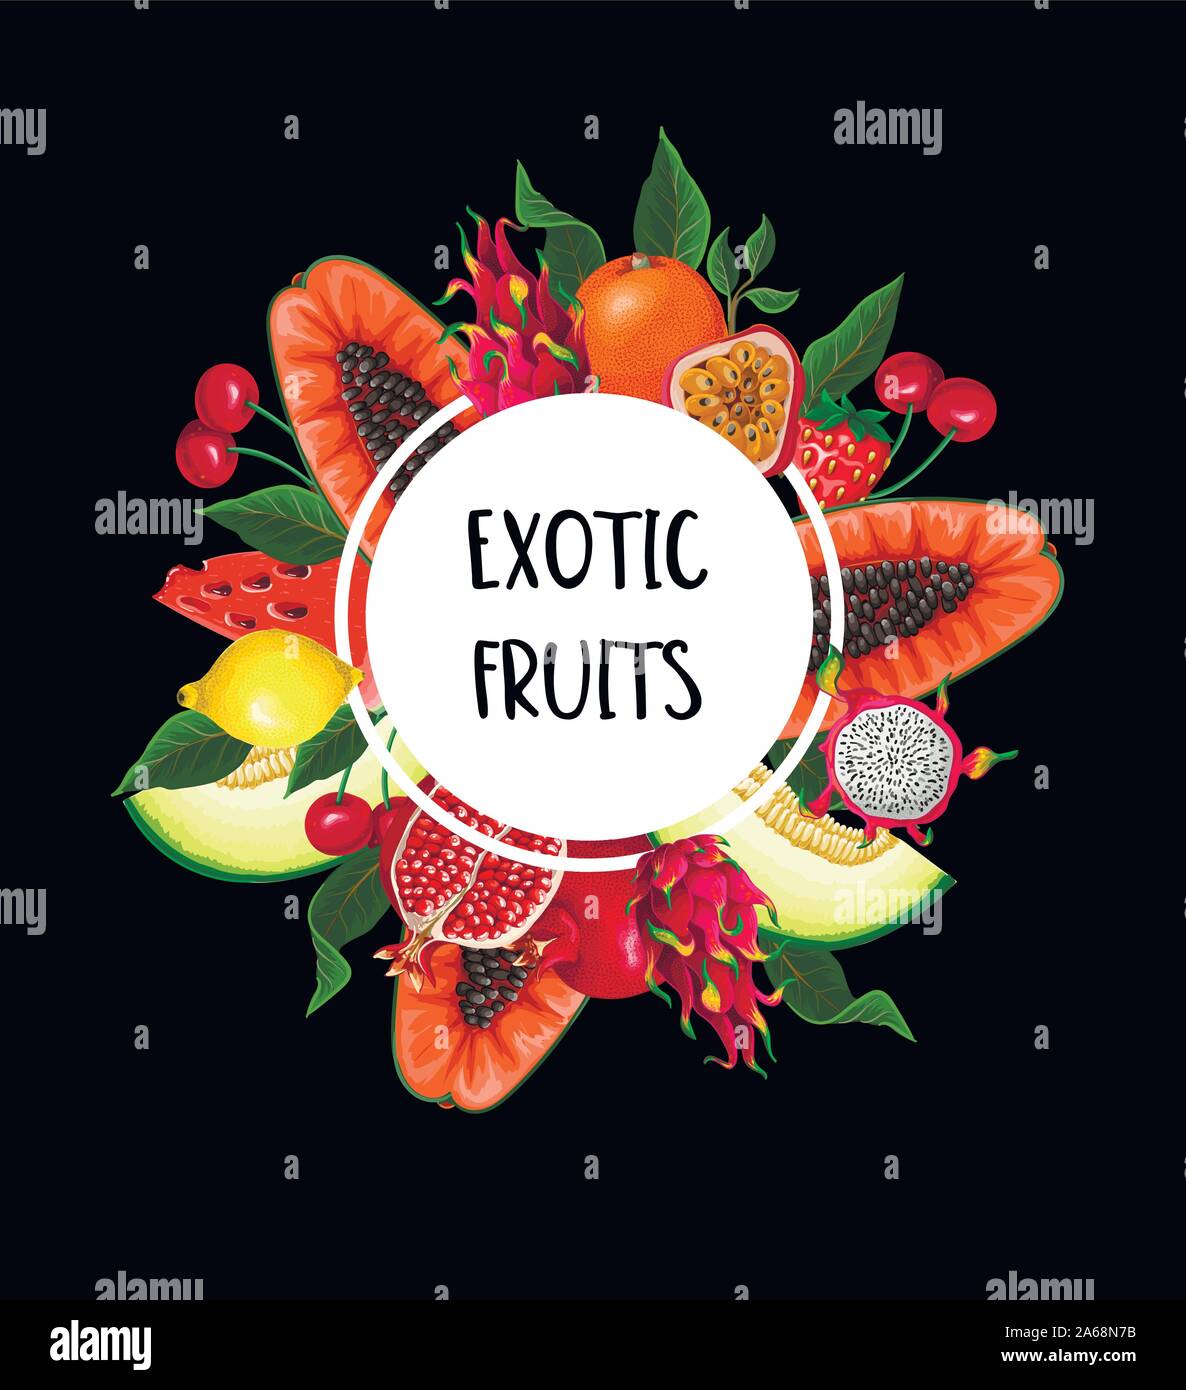 Exotische Früchte banner isoliert. Orangen, Papaya, Drachenfrucht. Wassermelone, Erdbeere und andere Stock Vektor